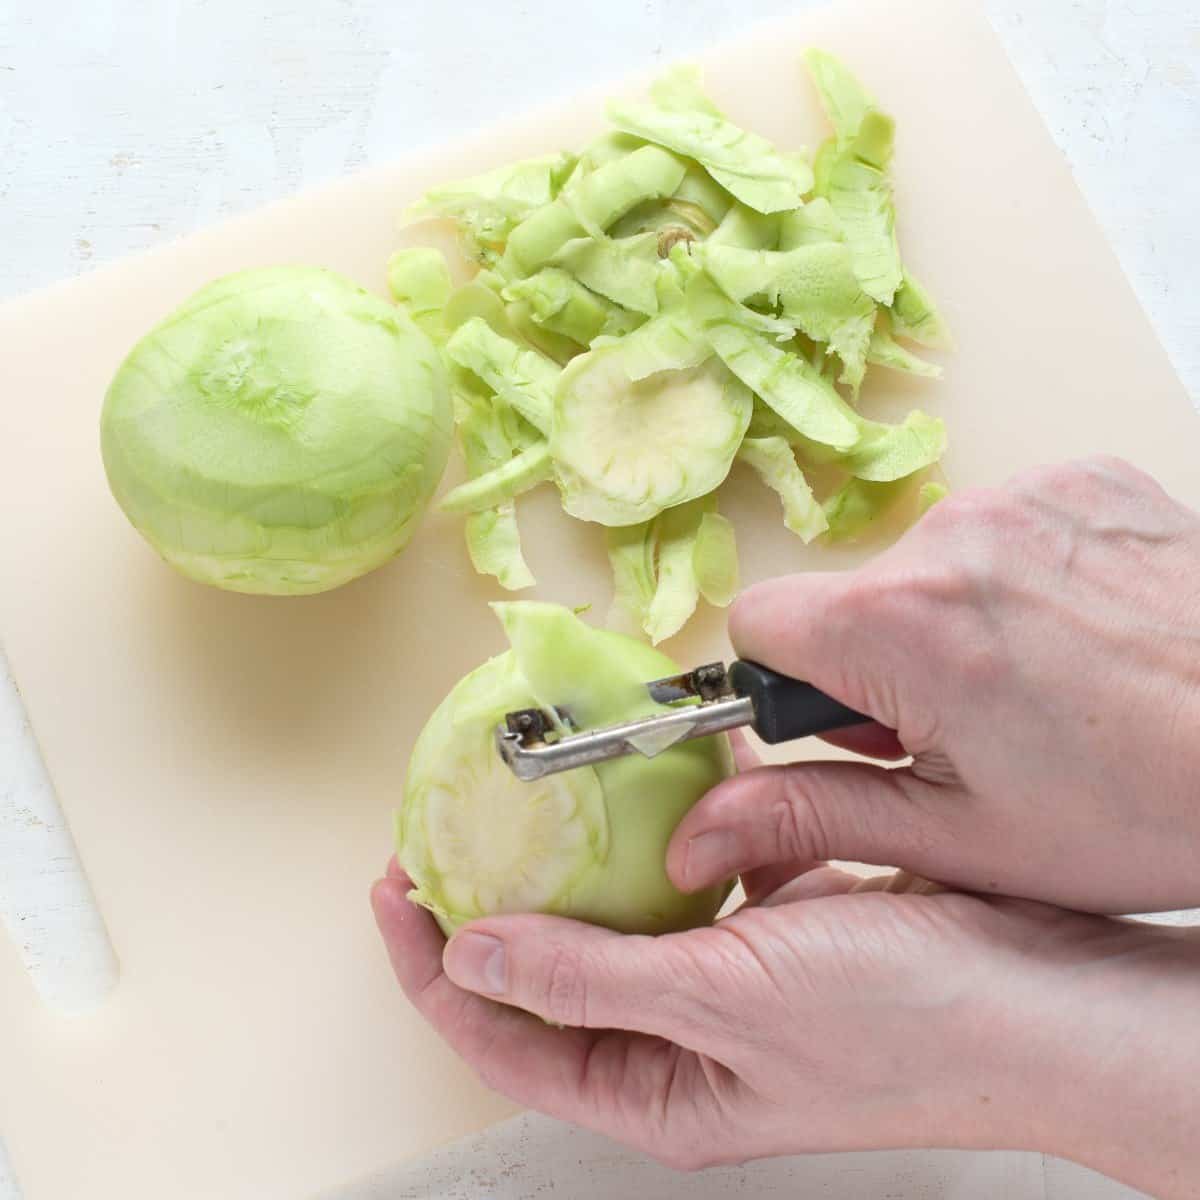 Peeling kohlrabi by hand with a vegetable peeler.